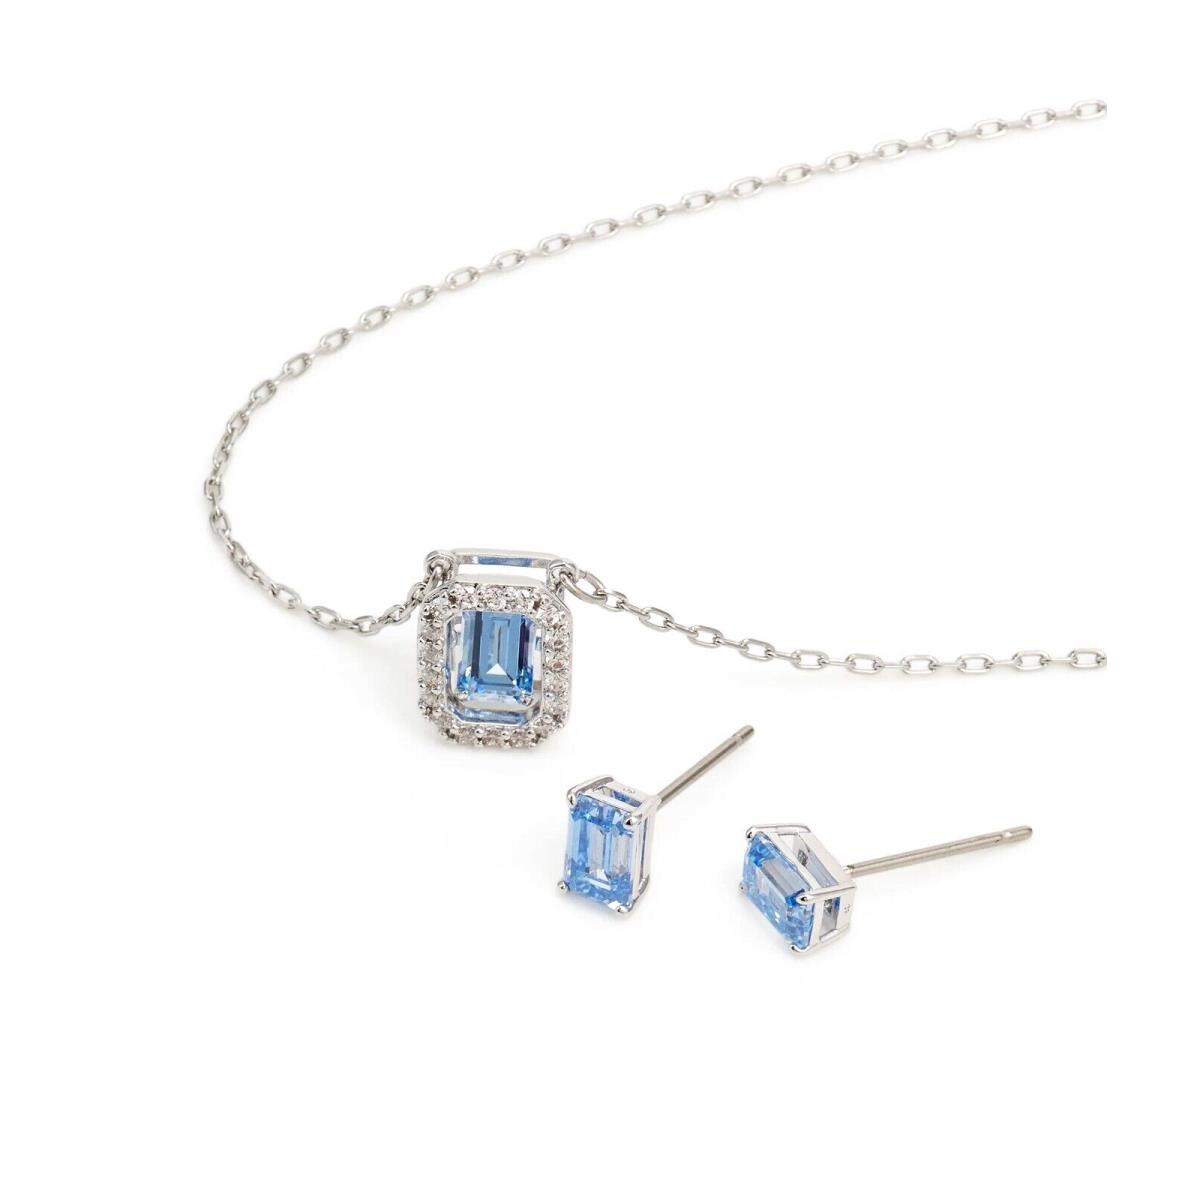 Swarovski 5641171 Blue Crystal Stud Necklace Millenia Jewelry Set